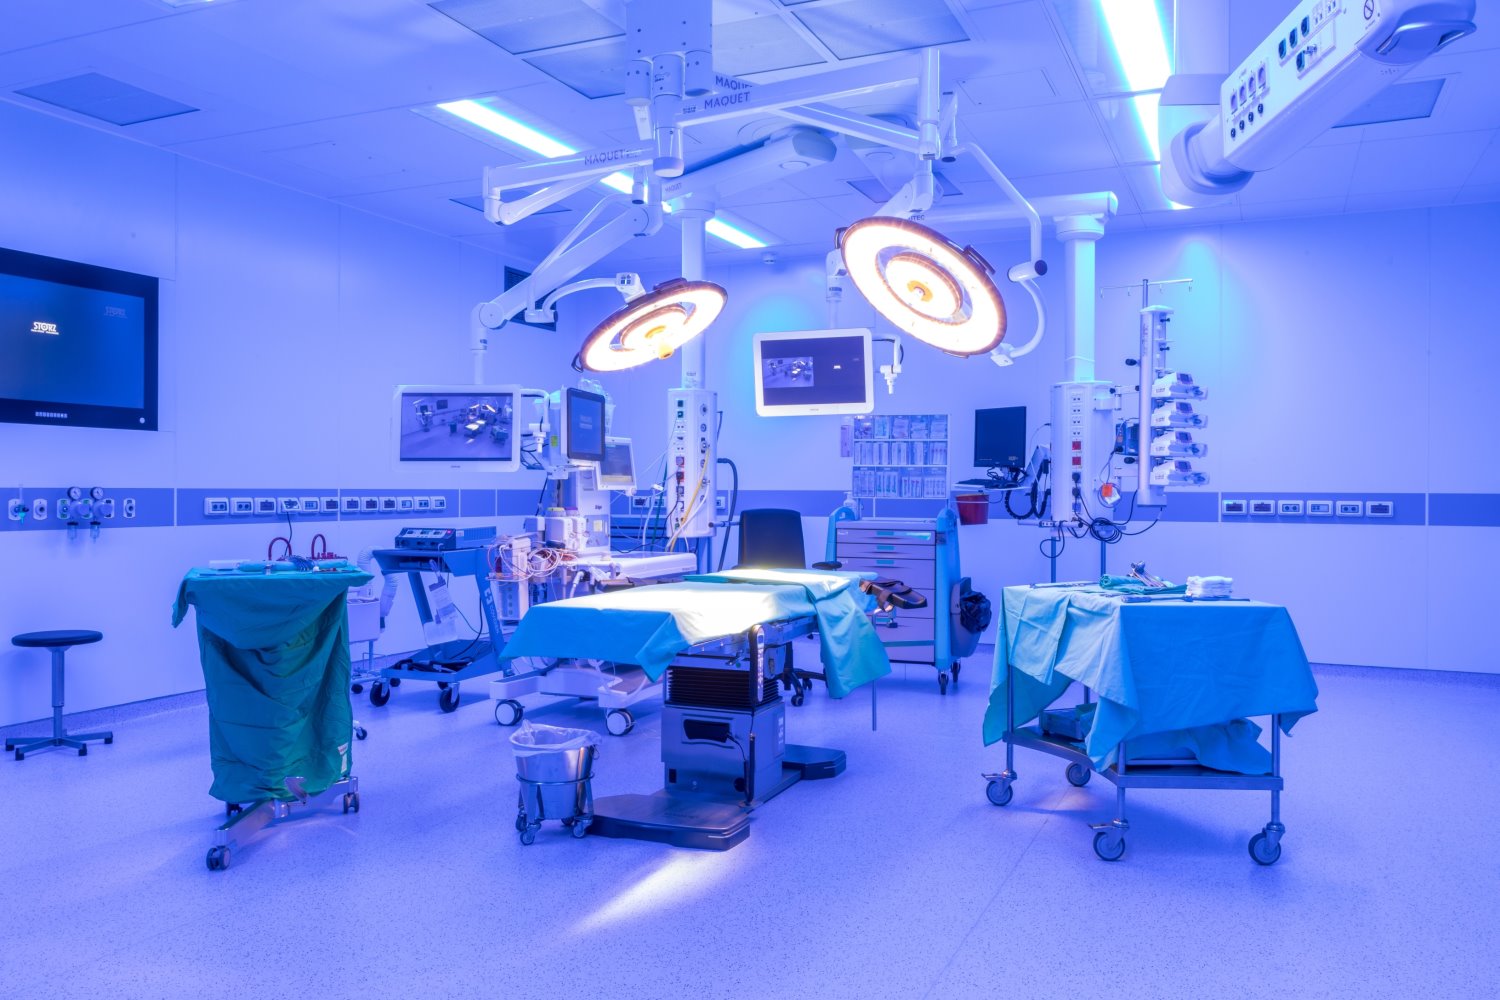 חדר ניתוח בבית החולים אסותא אשדוד - באדיבות דוברות אסותא